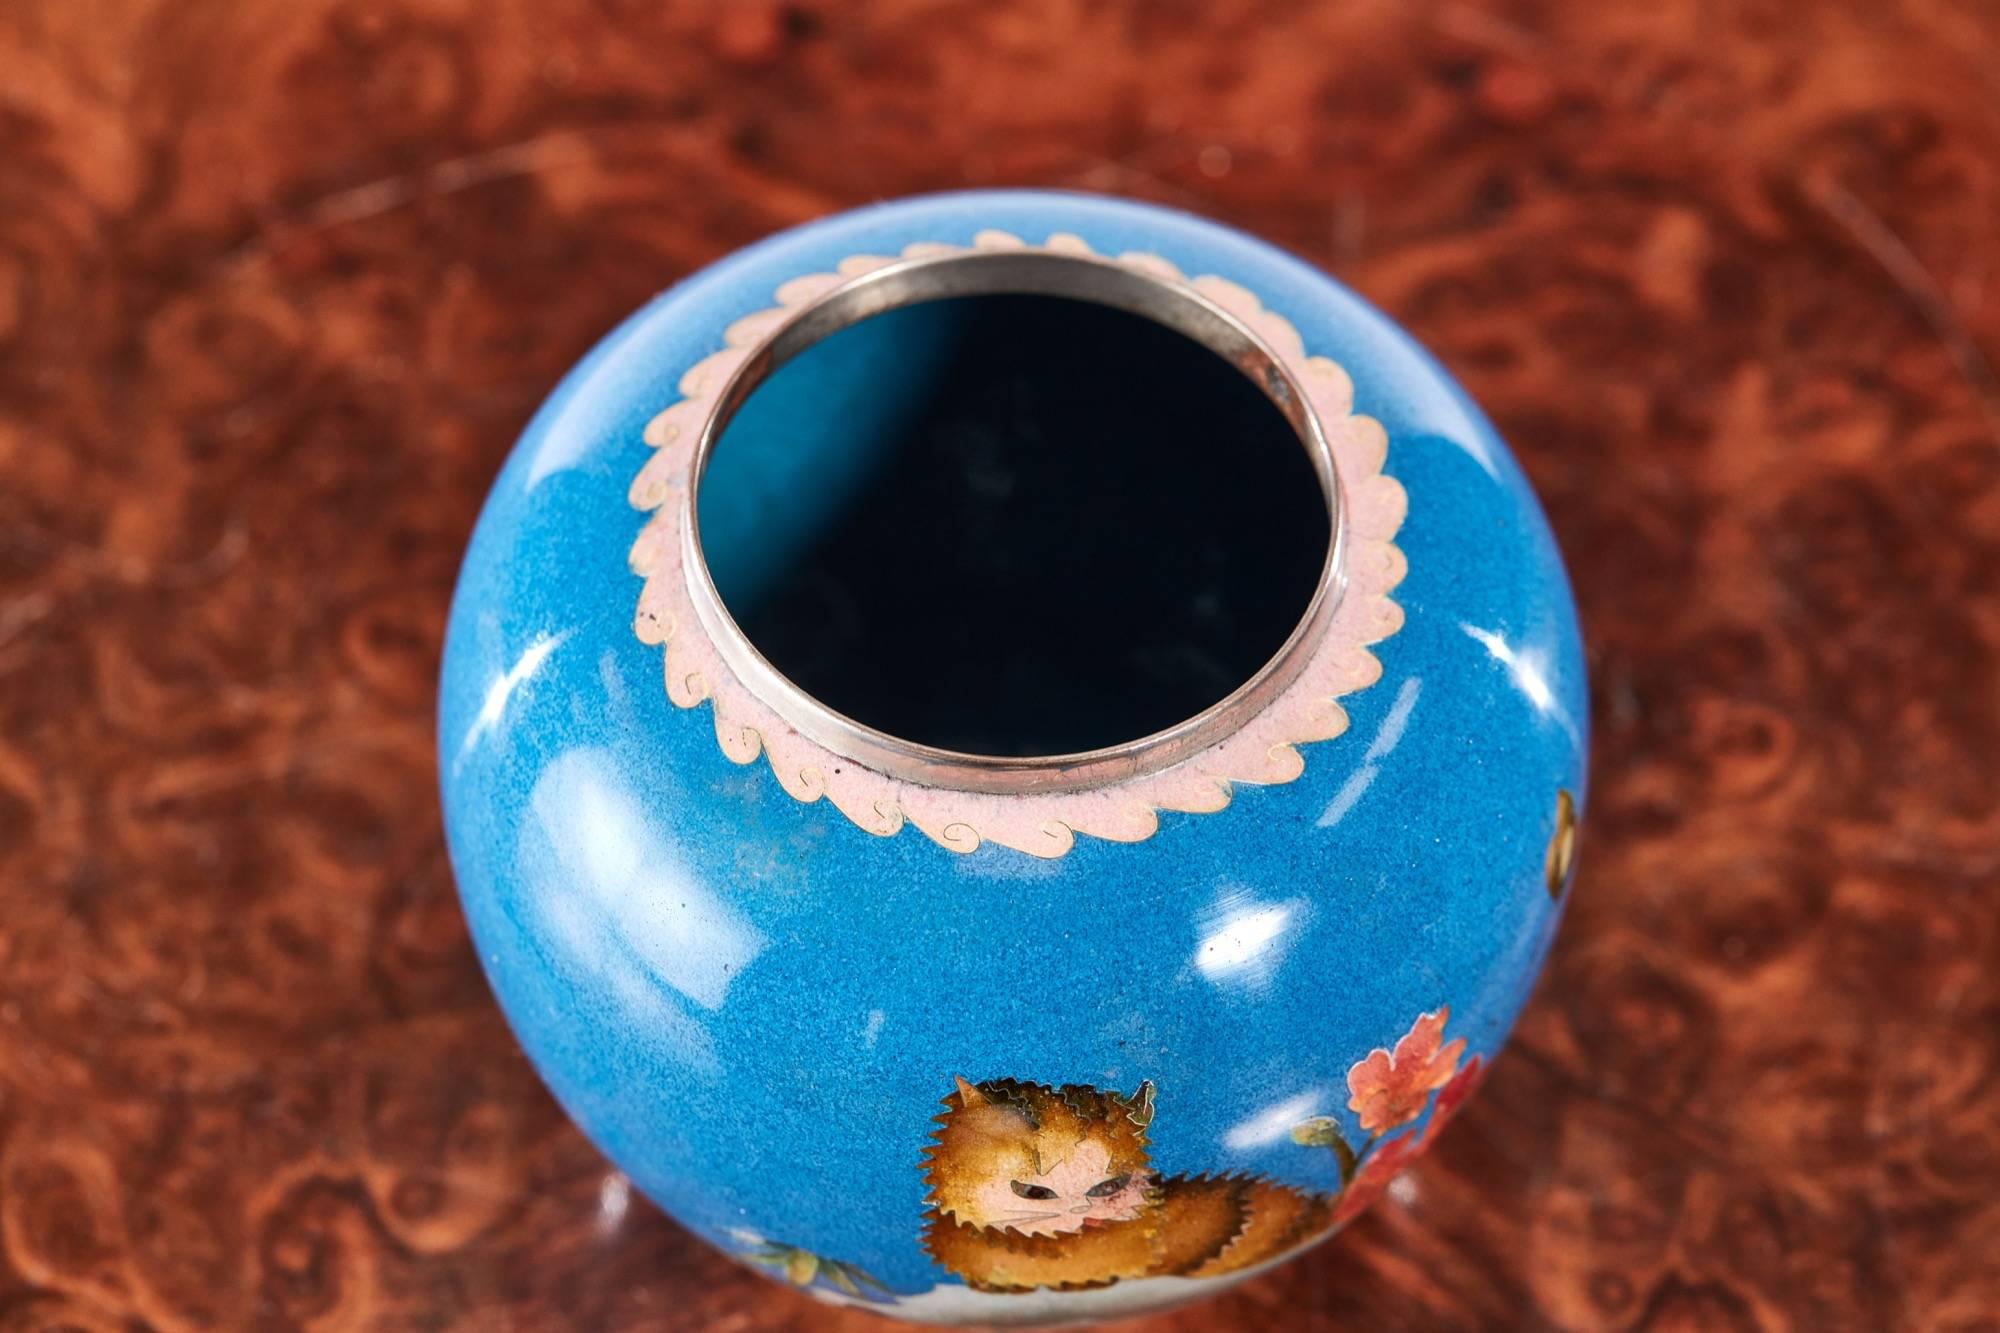 Quality antique miniature Japanese cloisonné vase 
Perfect condition.